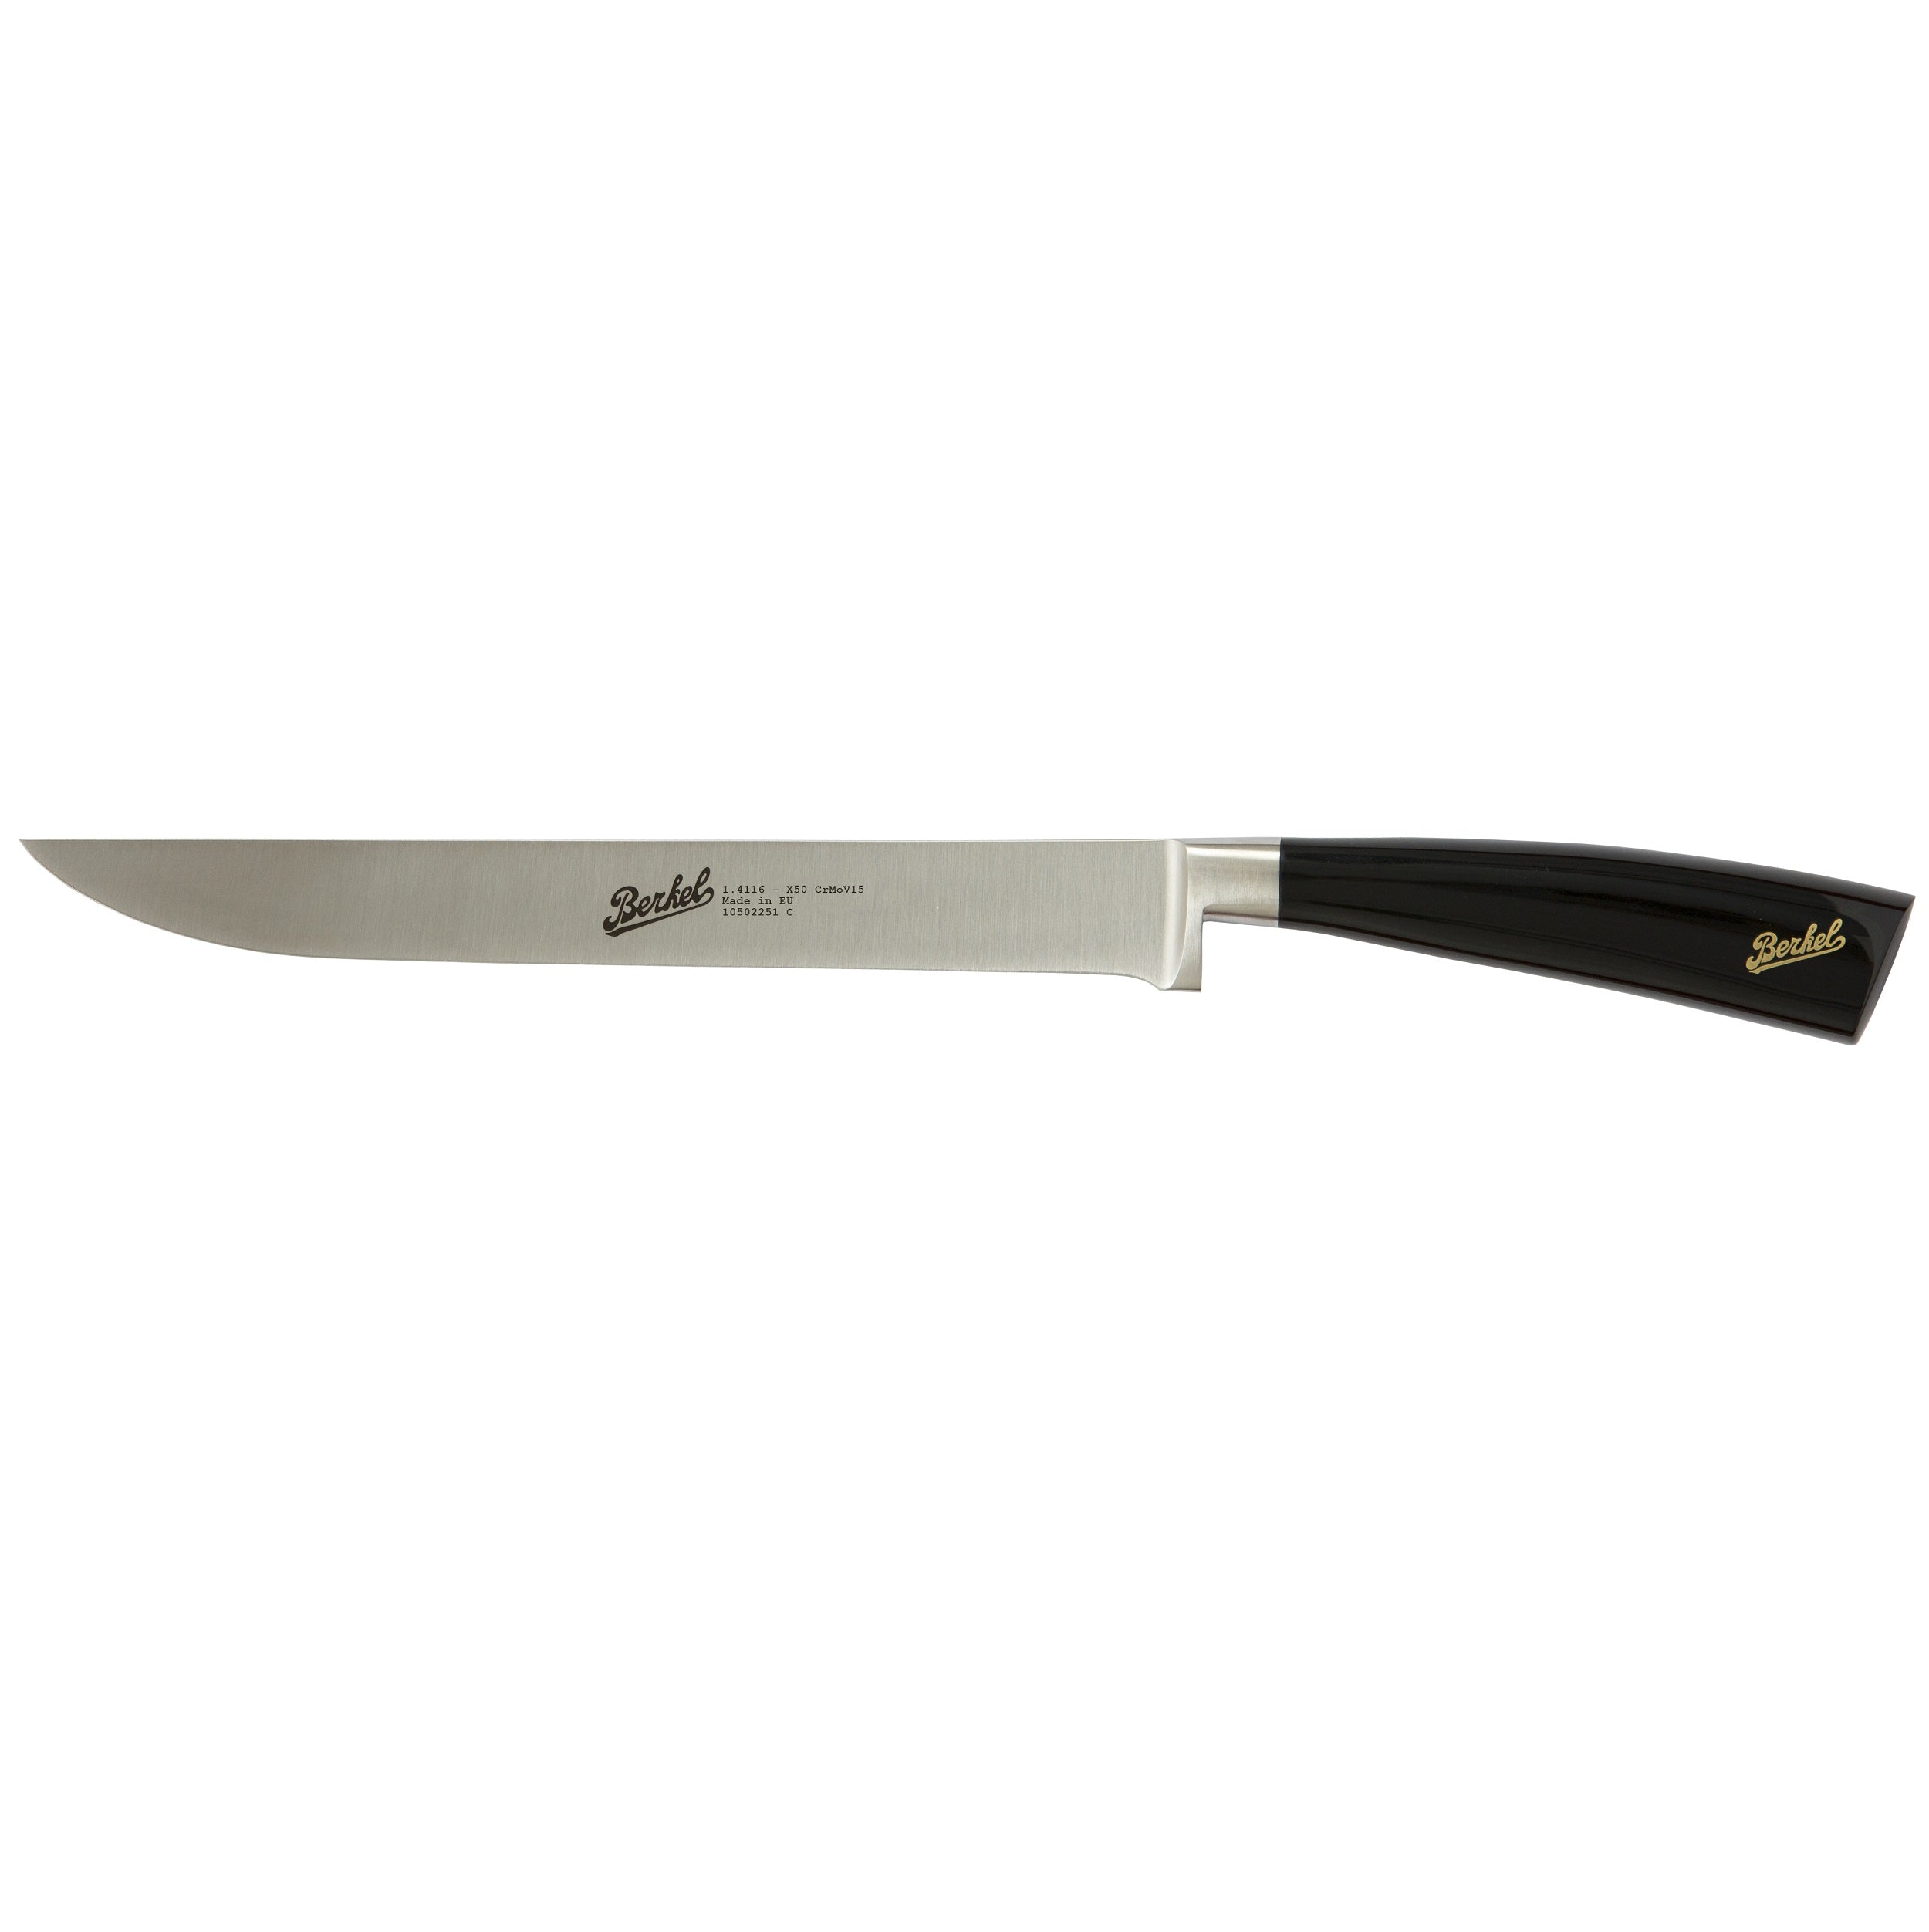 Berkel Elegance Roast knife cm 22 Steel handle